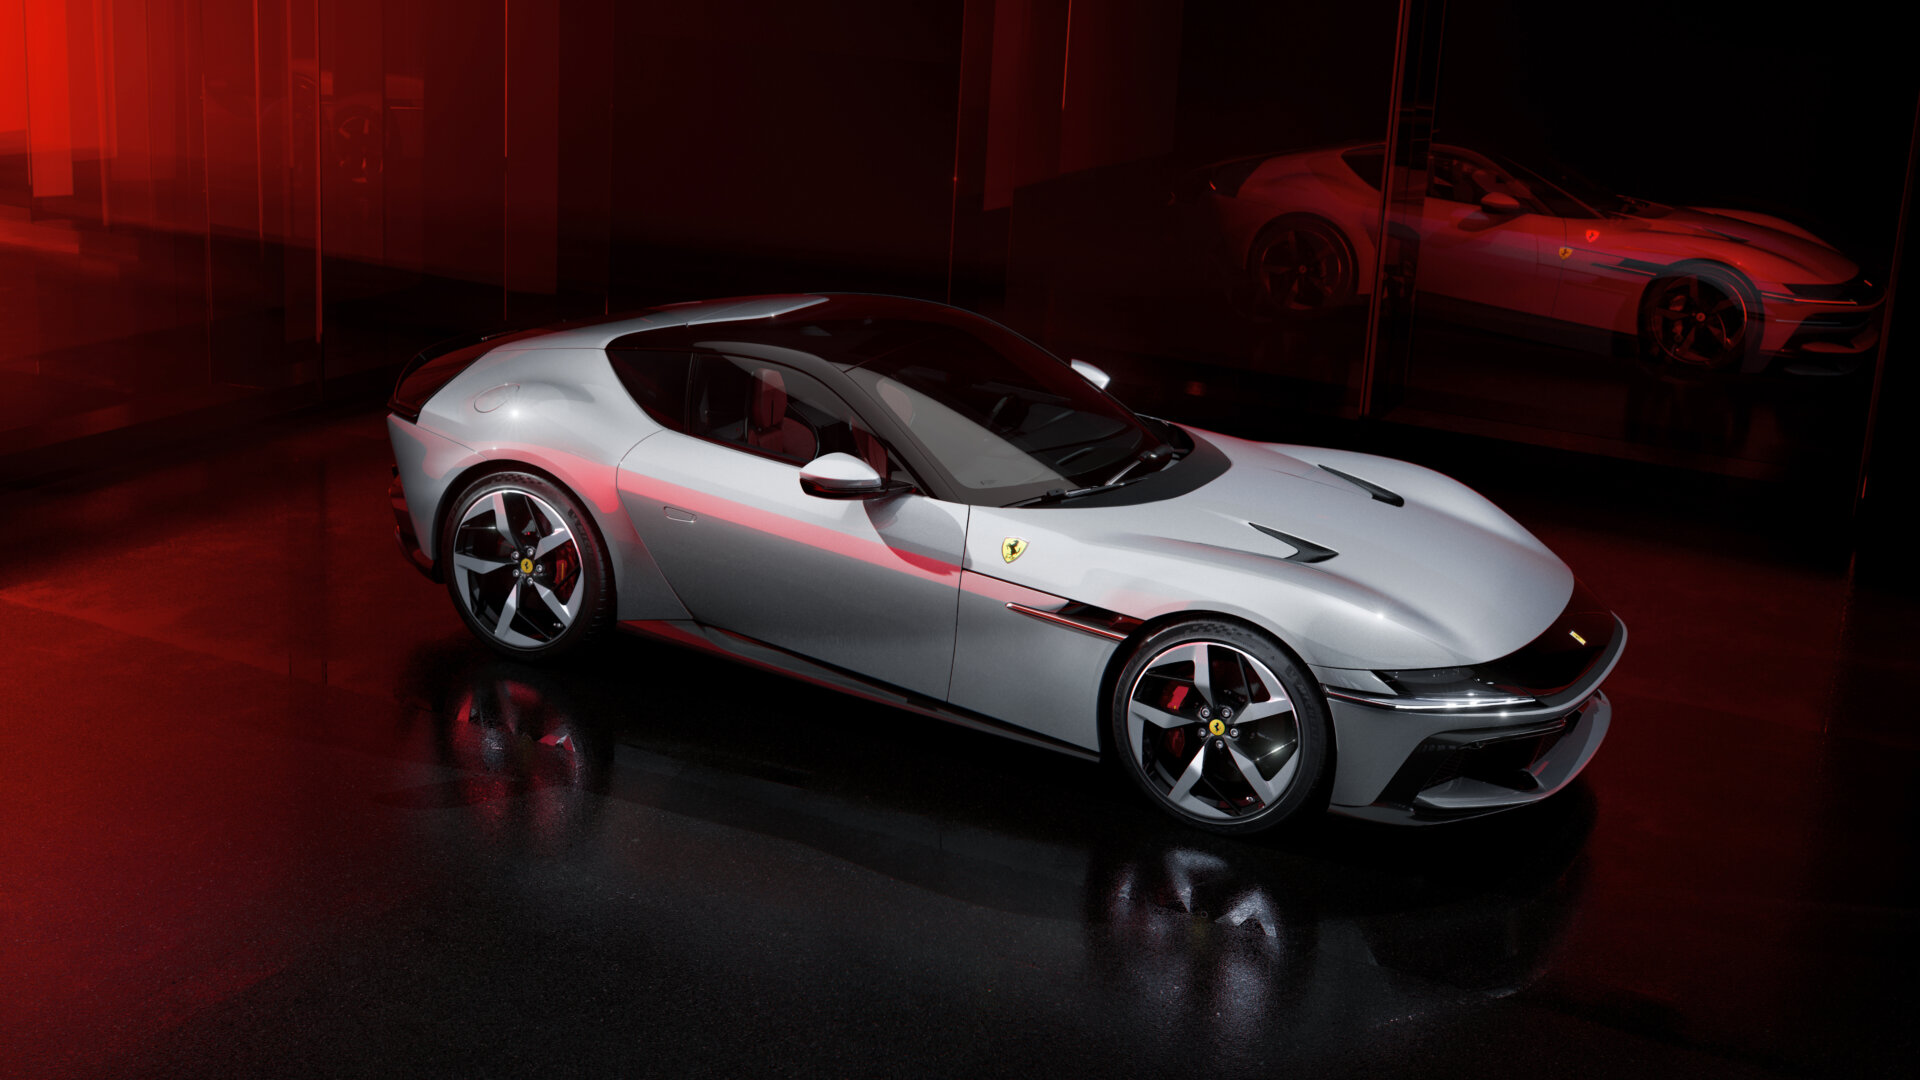 New_Ferrari_V12_ext_02_Design_white_media_3c517e83-e9ab-4a19-b591-67ef3dd8db51